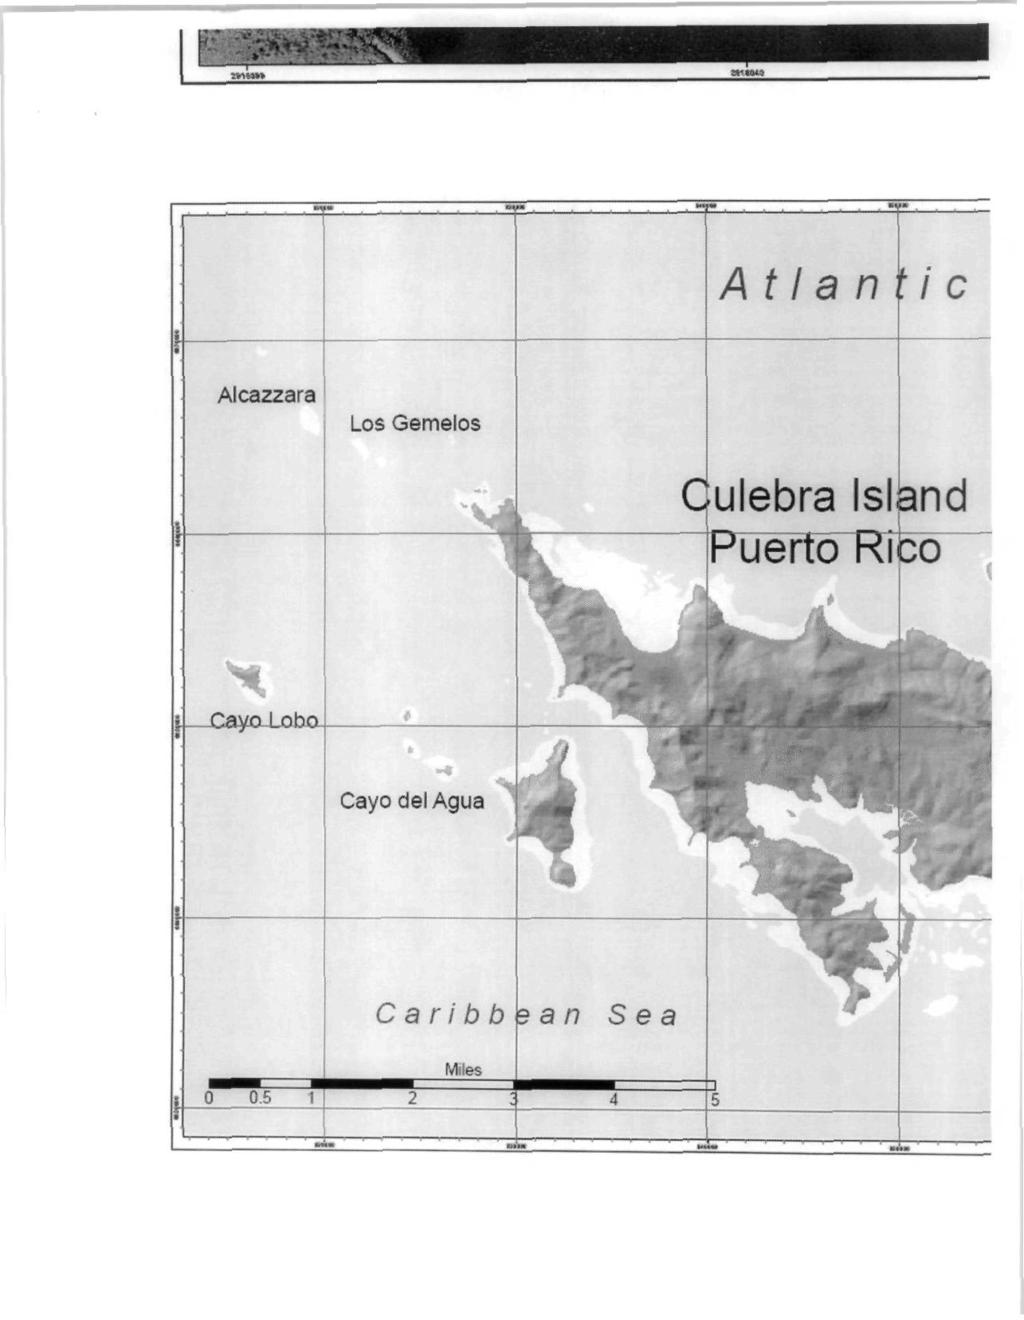 Atlantic Alcazzara Los Gemelos Culebra Island PueTtd~RTco~